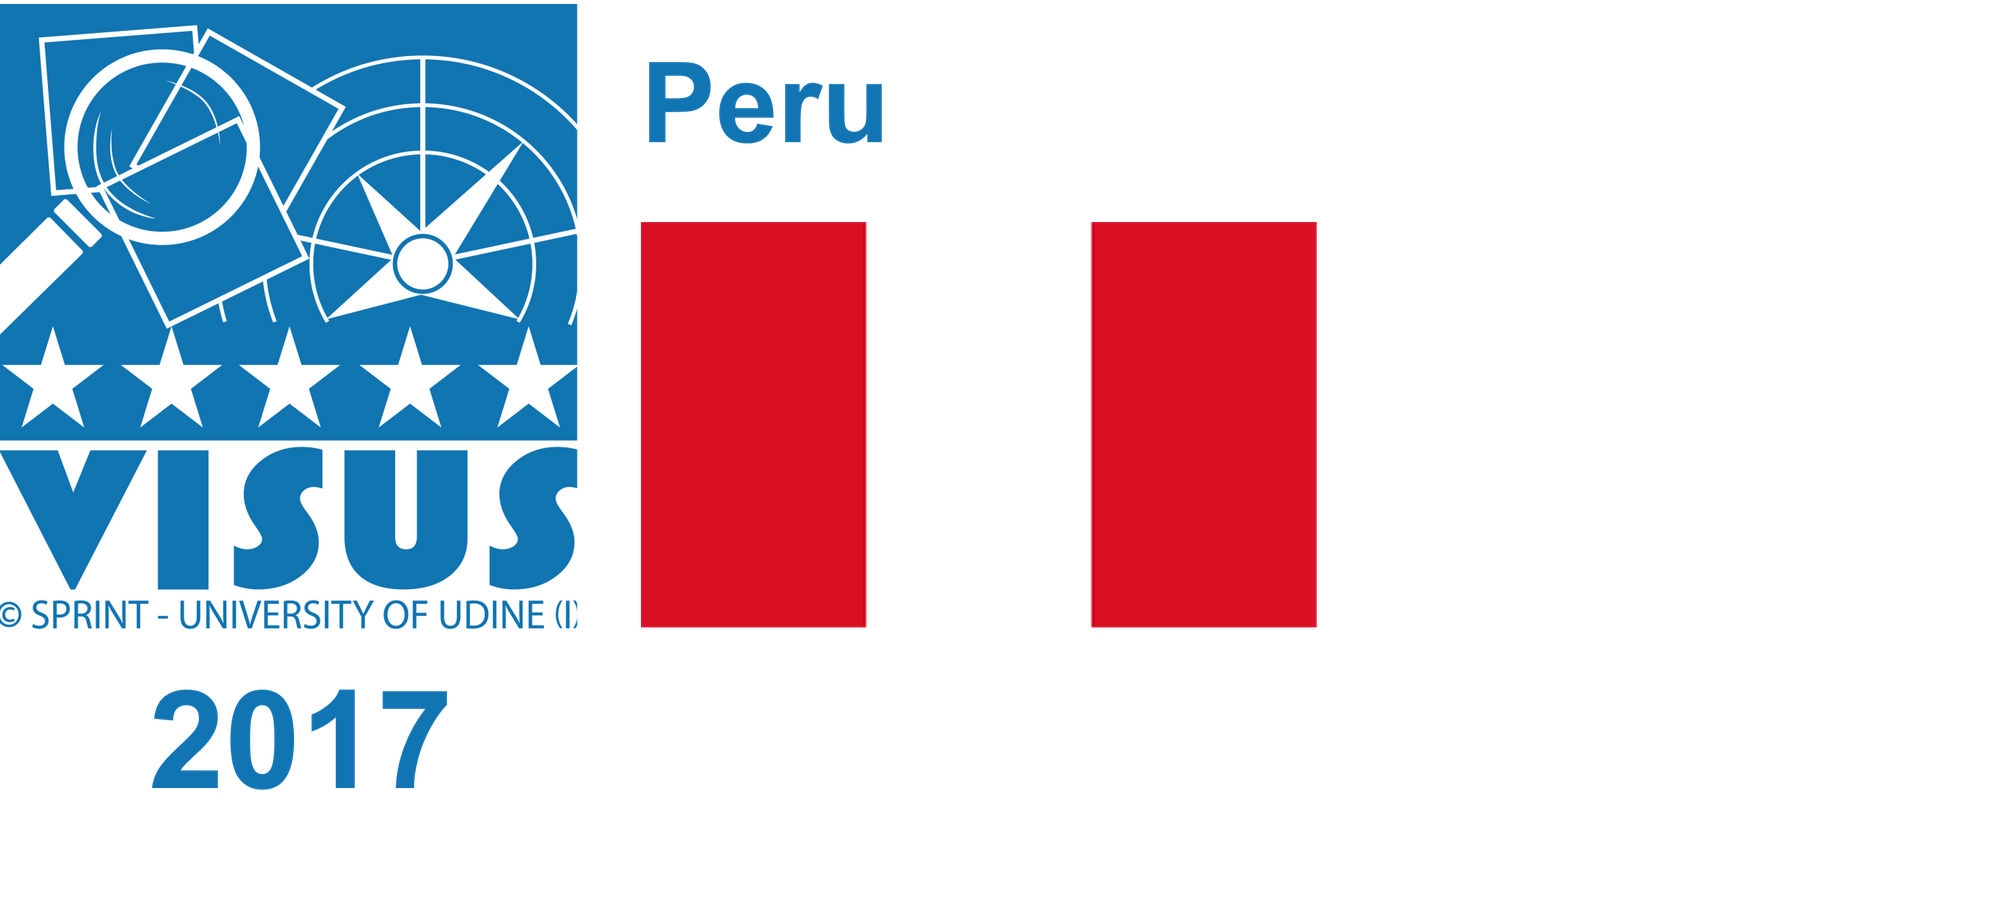 Peru, 2017